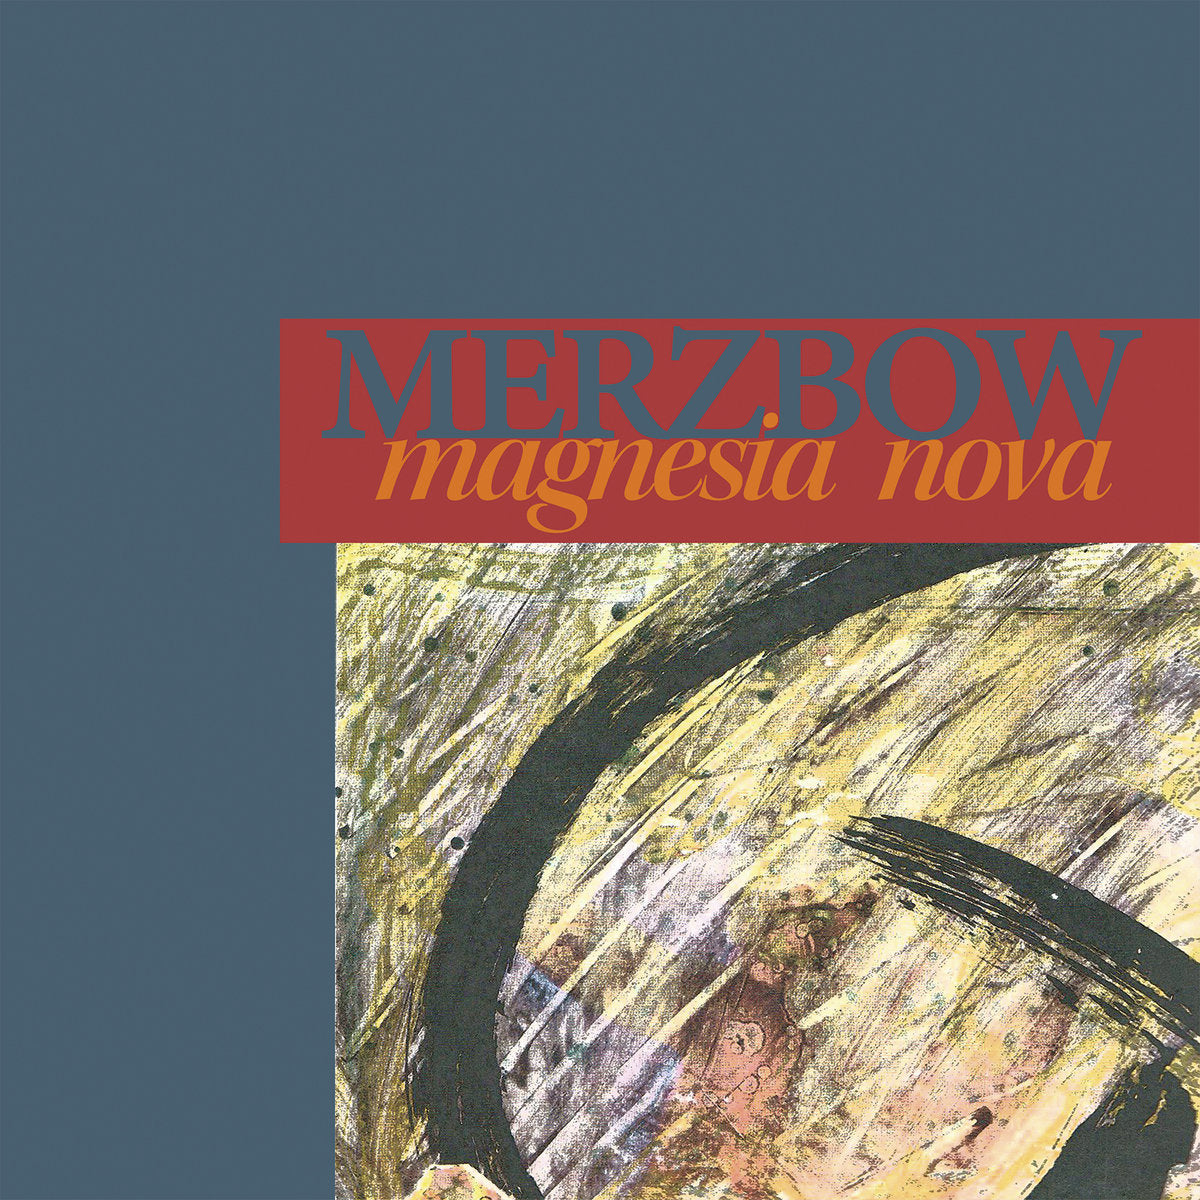 MERZBOW - MAGNESIA NOVA Vinyl 2xLP